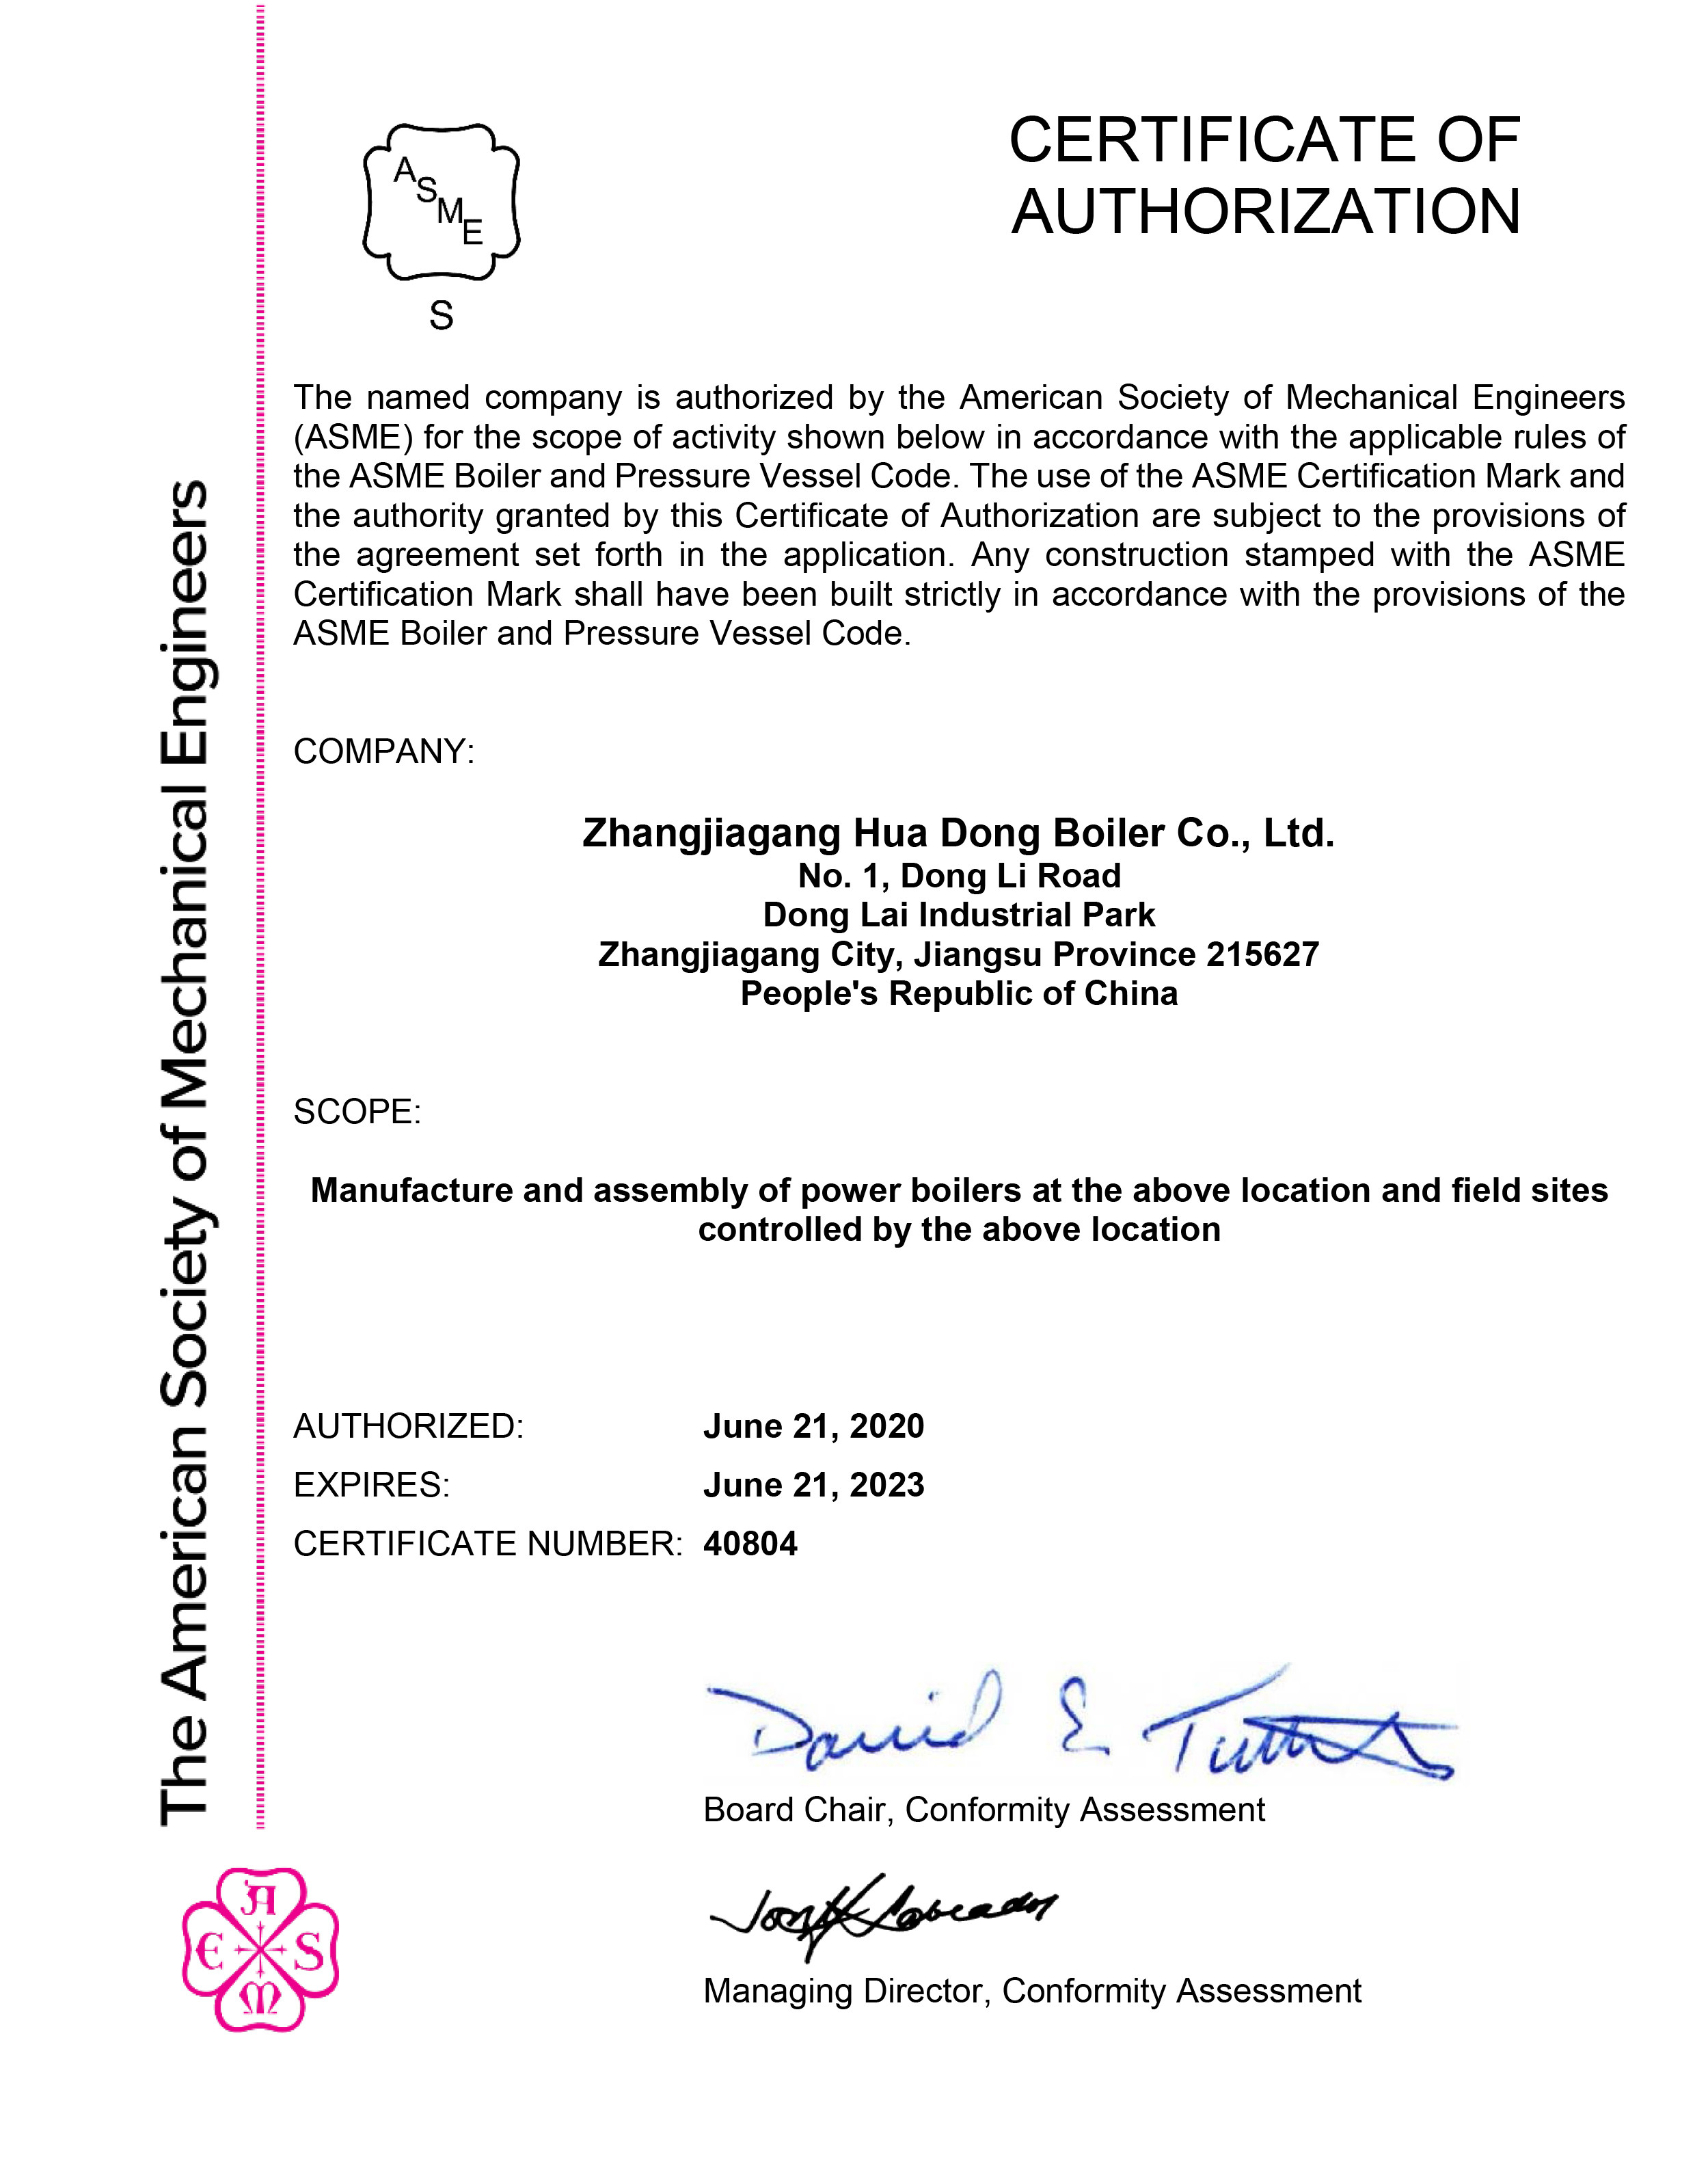 Zhangjiagang HuaDong Boiler Co., Ltd. Certifications